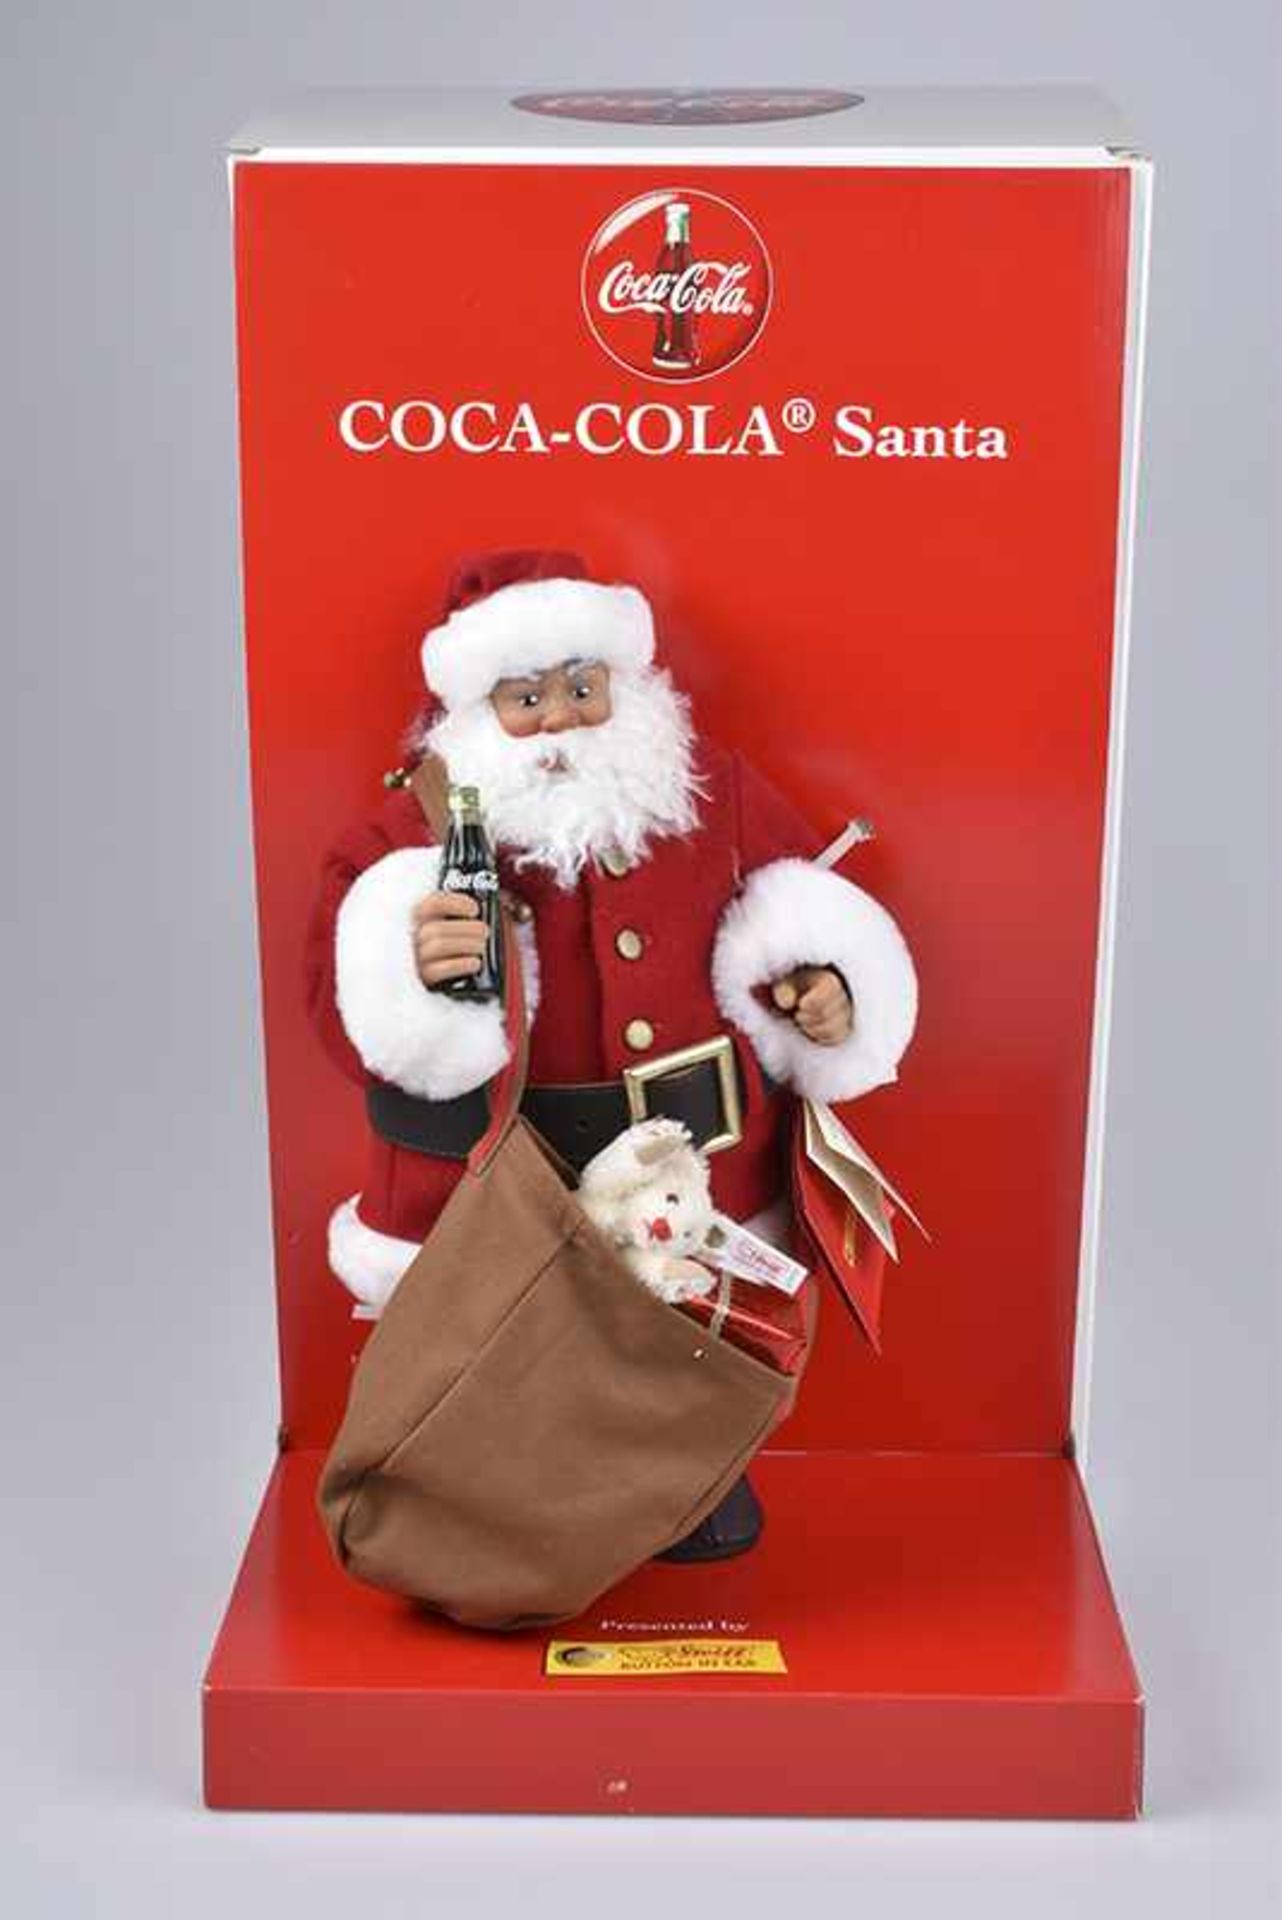 STEIFF Coca Cola "Santa", limitierte Auflage, mit Zertifikat 6135/ 10.000, KF, Nr. 670350, roter